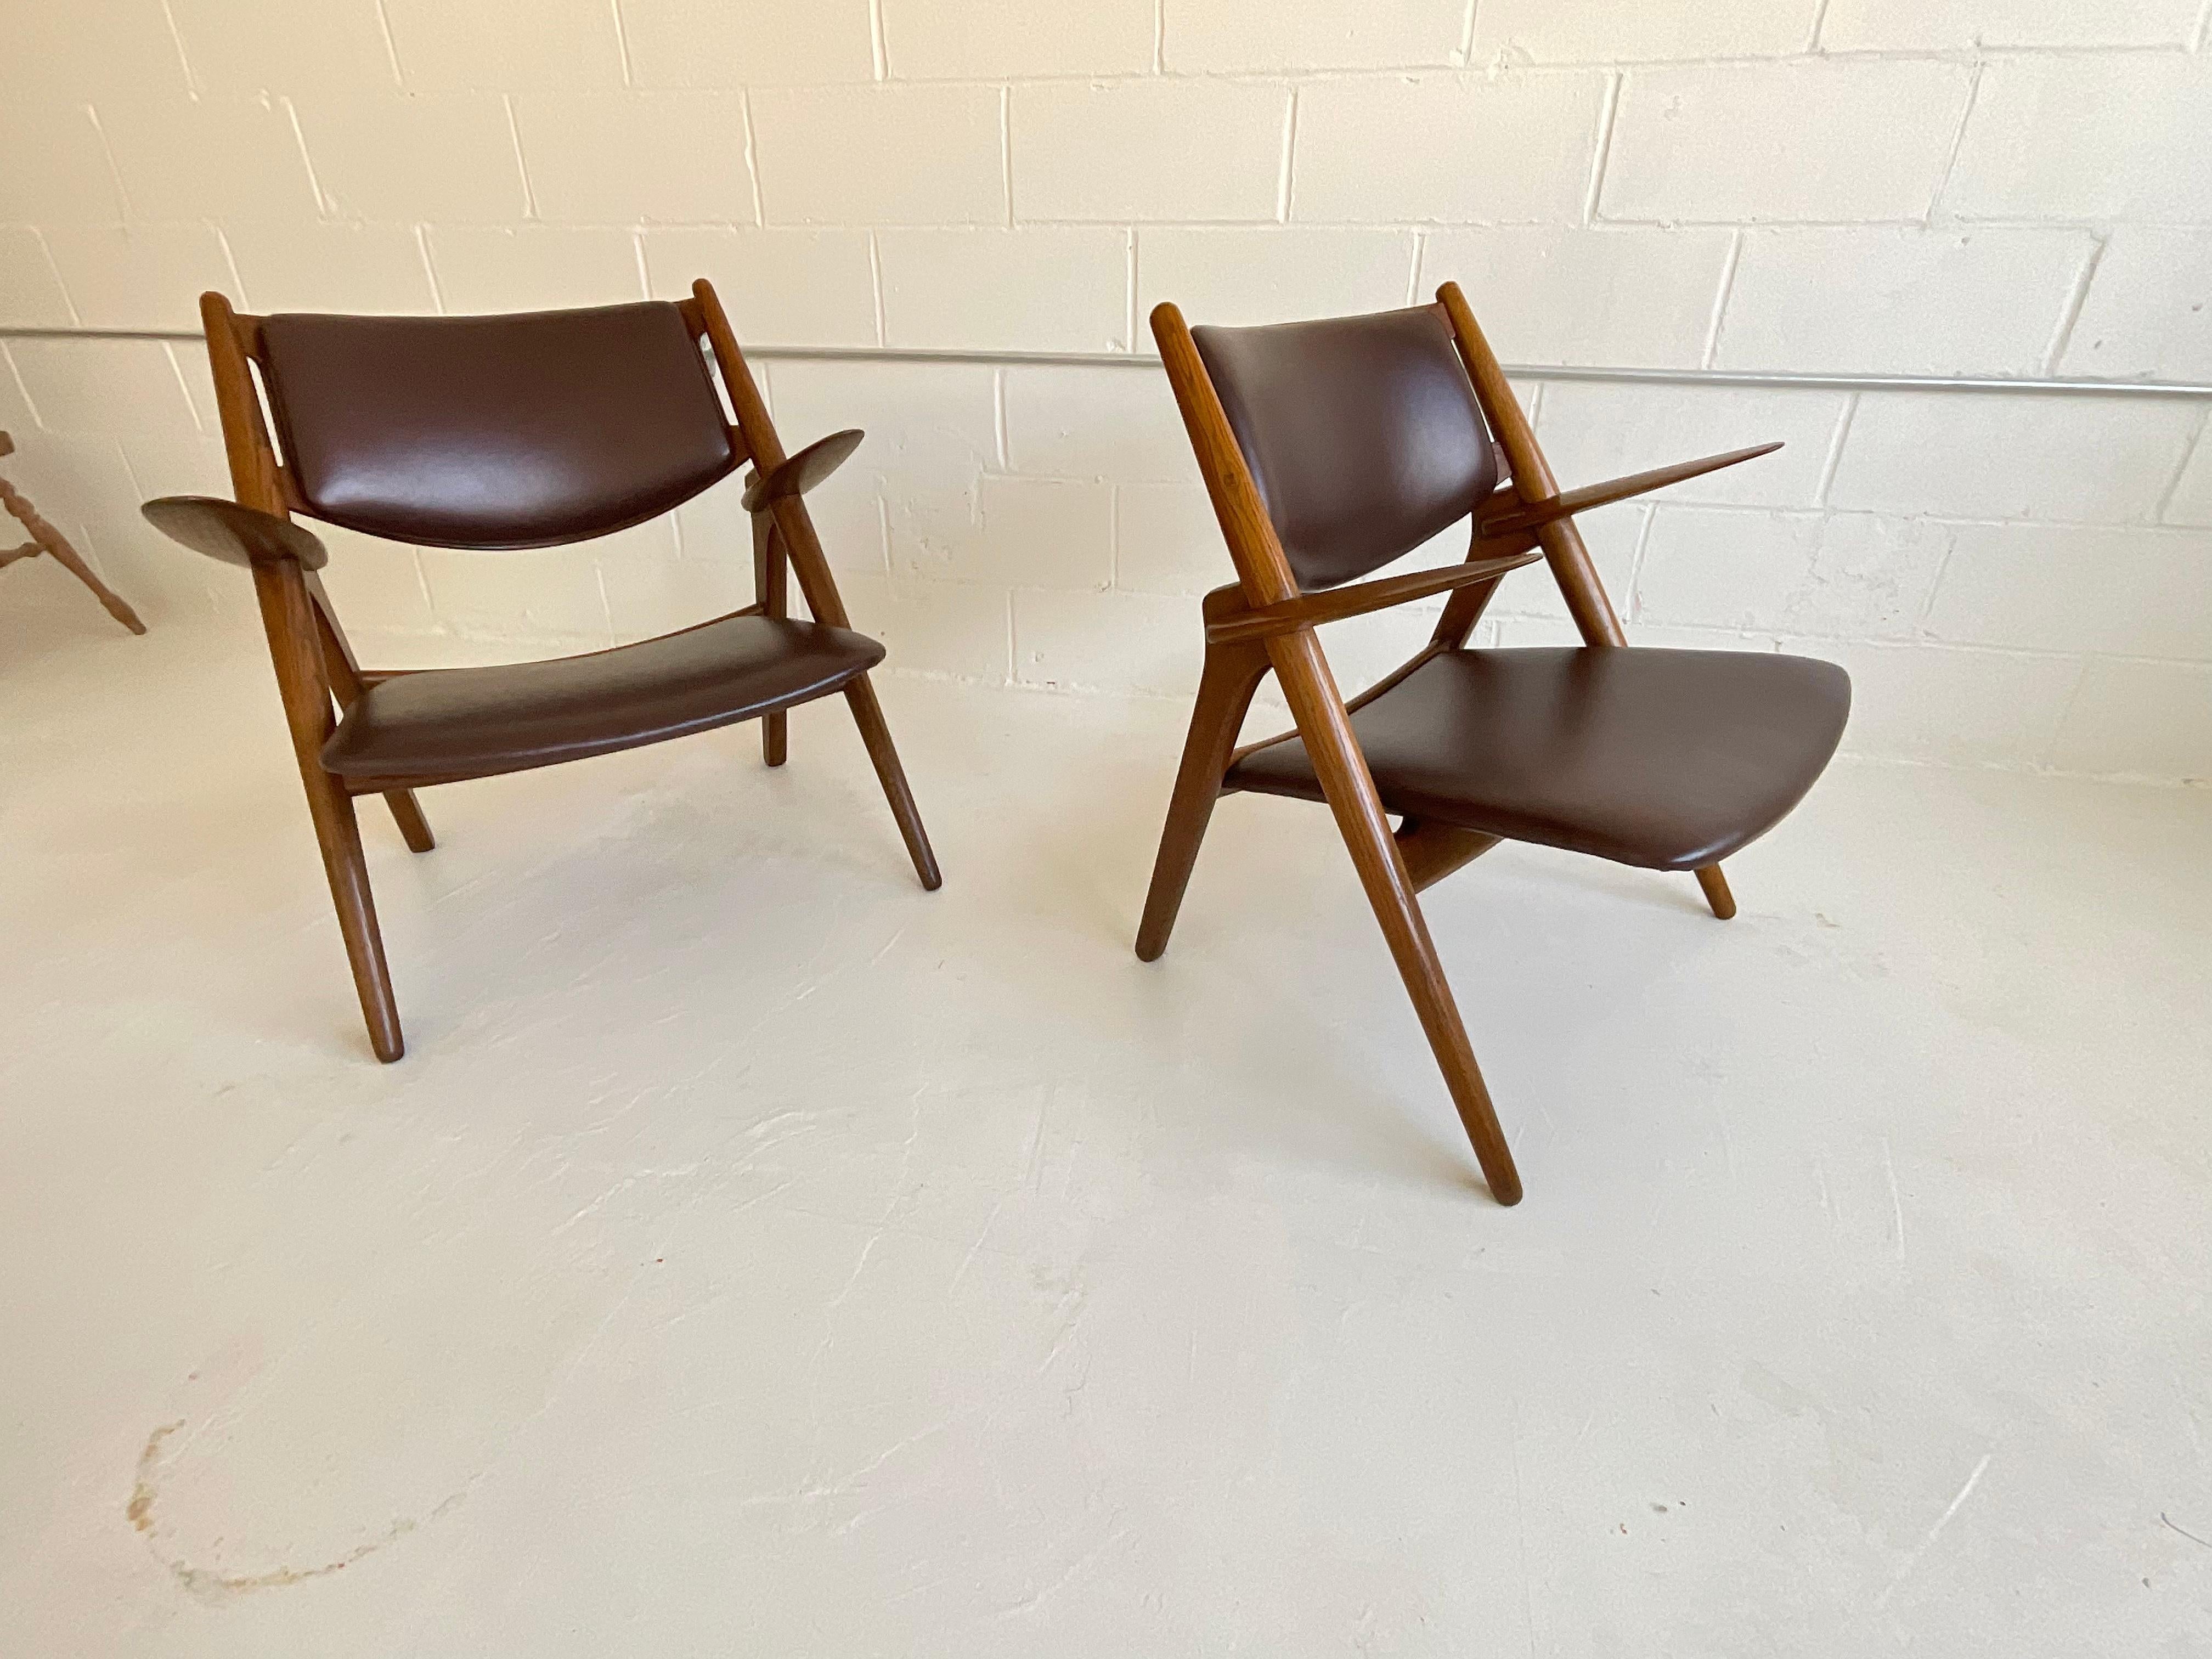 Eine Ikone des Sitzdesigns des 20. Jahrhunderts, die auch 72 Jahre nach ihrer Einführung noch gefeiert wird: der Sawbuck-Stuhl von Hans Wegner für Carl Hansen, 1951. Montaperto Studios freut sich, ein Vintage-Paar in Eiche und braunem, italienischem